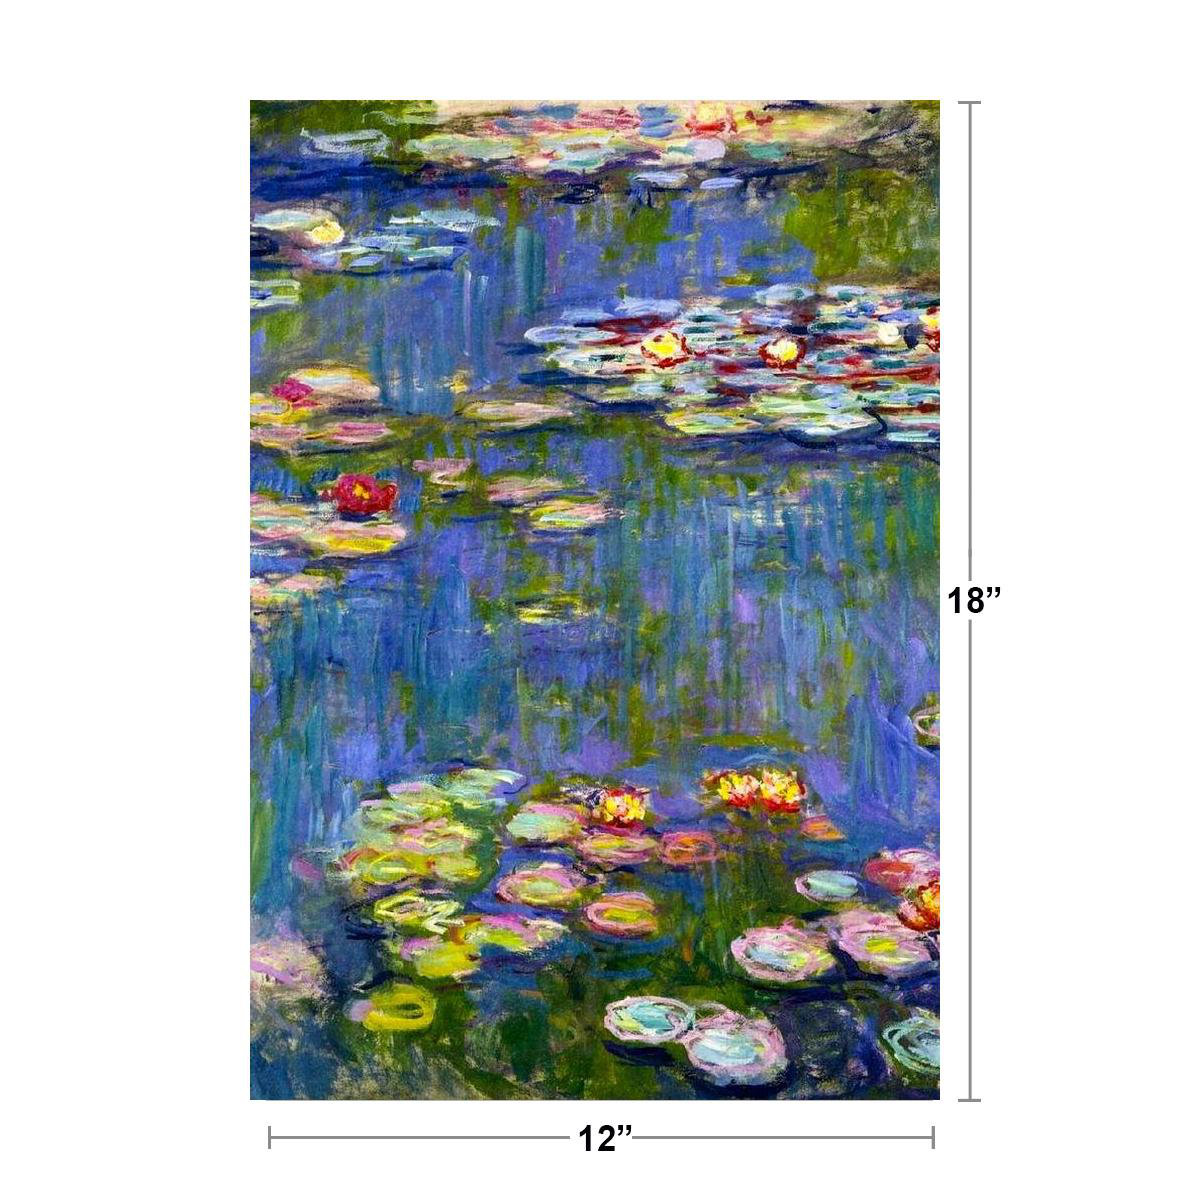 Claude Monet Artists Garden at Argenteuil Art Print Poster 12x18 inch 